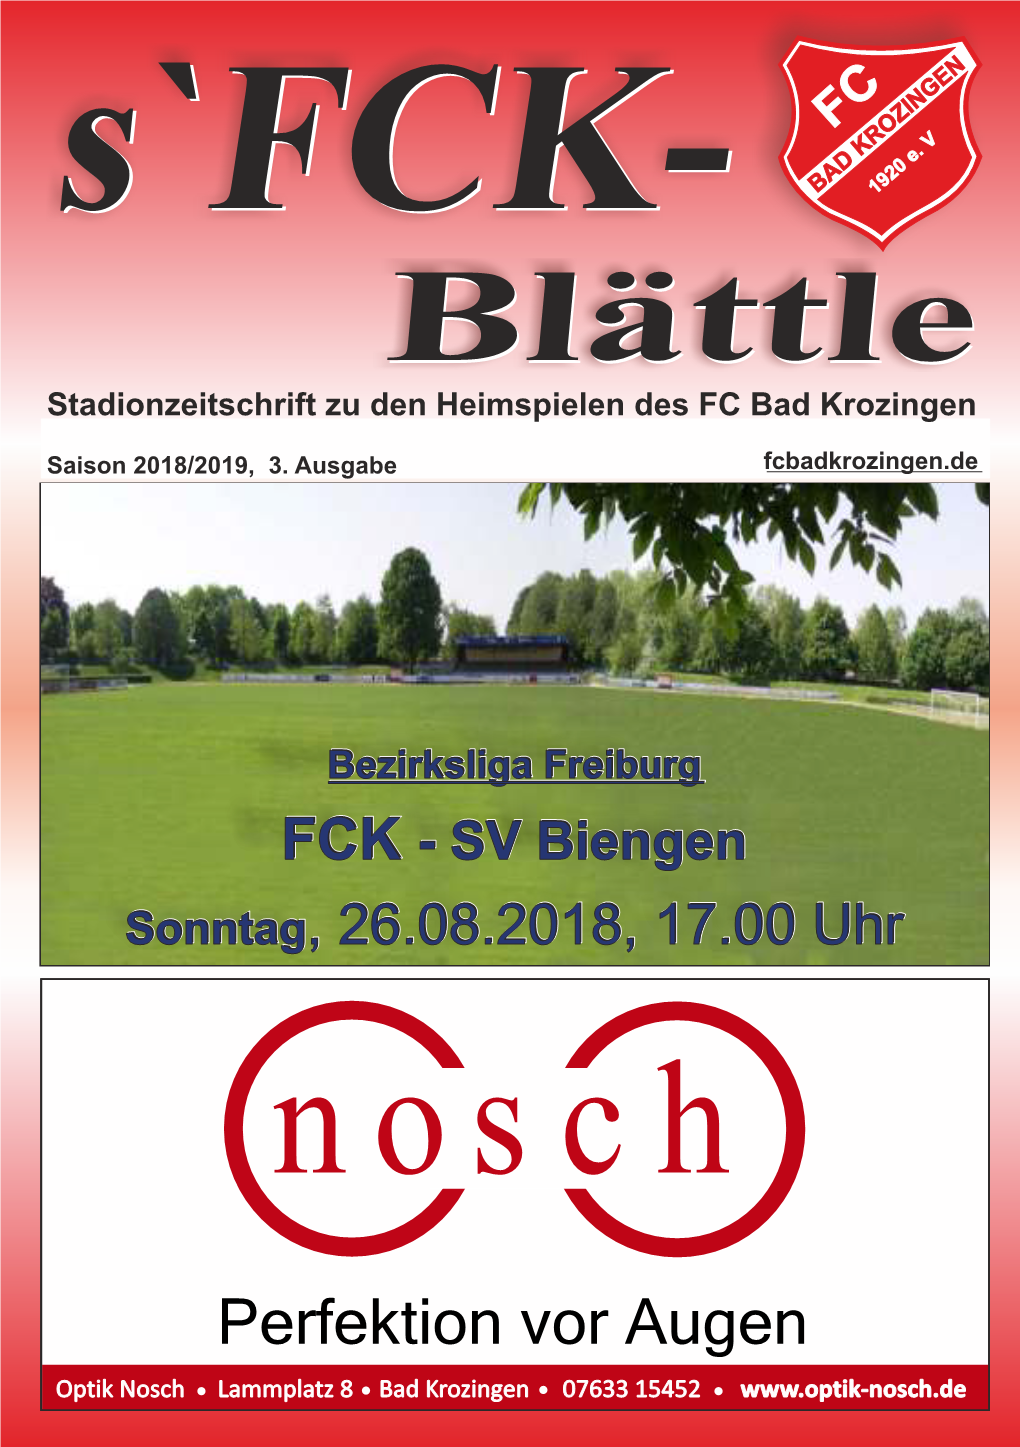 Blättle Stadionzeitschrift Zu Den Heimspielen Des FC Bad Krozingen